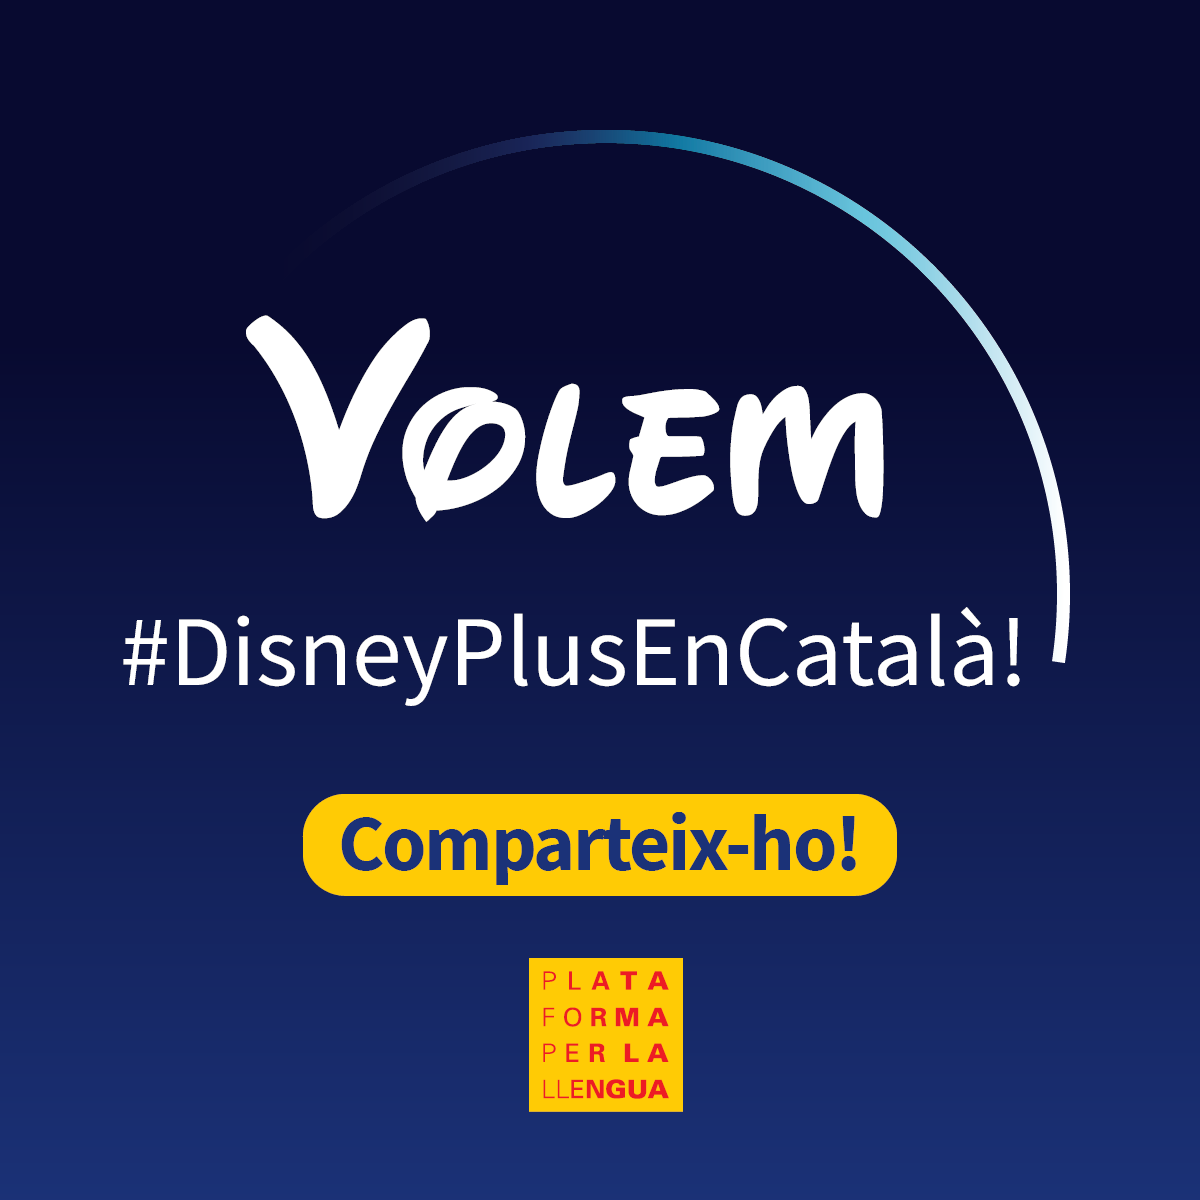 Disney Plus não inclui a língua catalã em seu catálogo de filmes